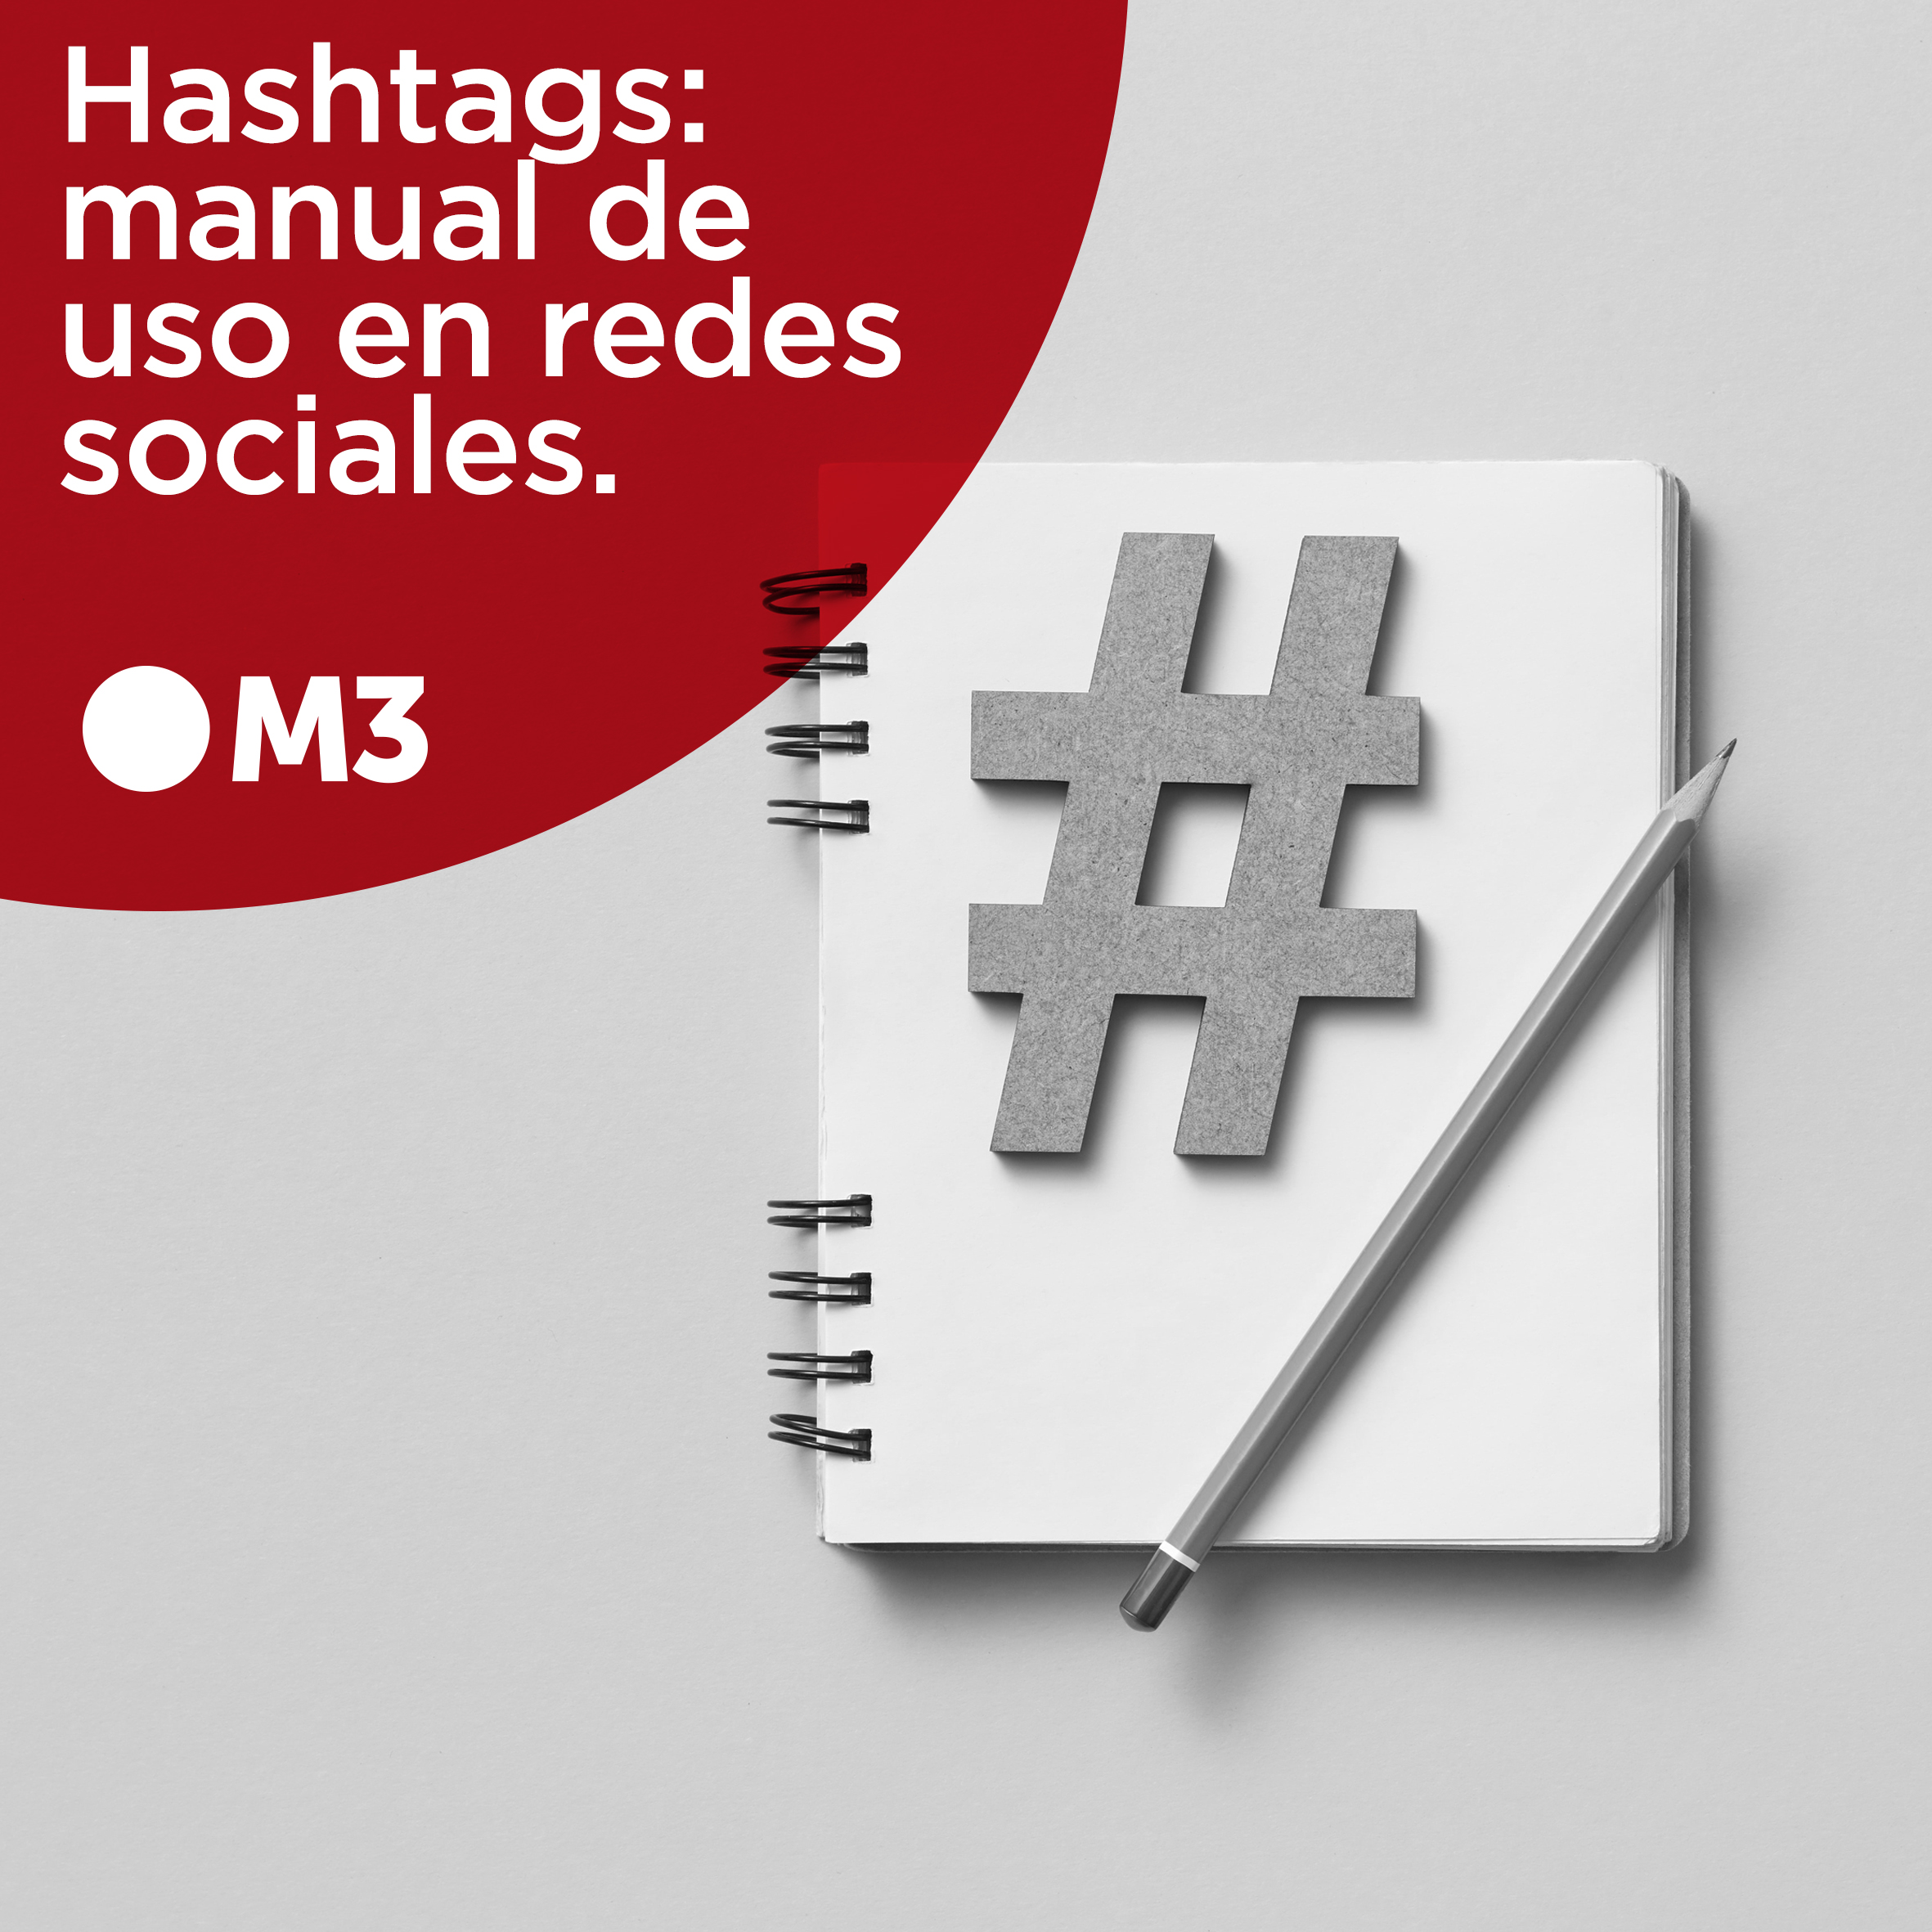 Hashtags: Manual de uso en redes sociales